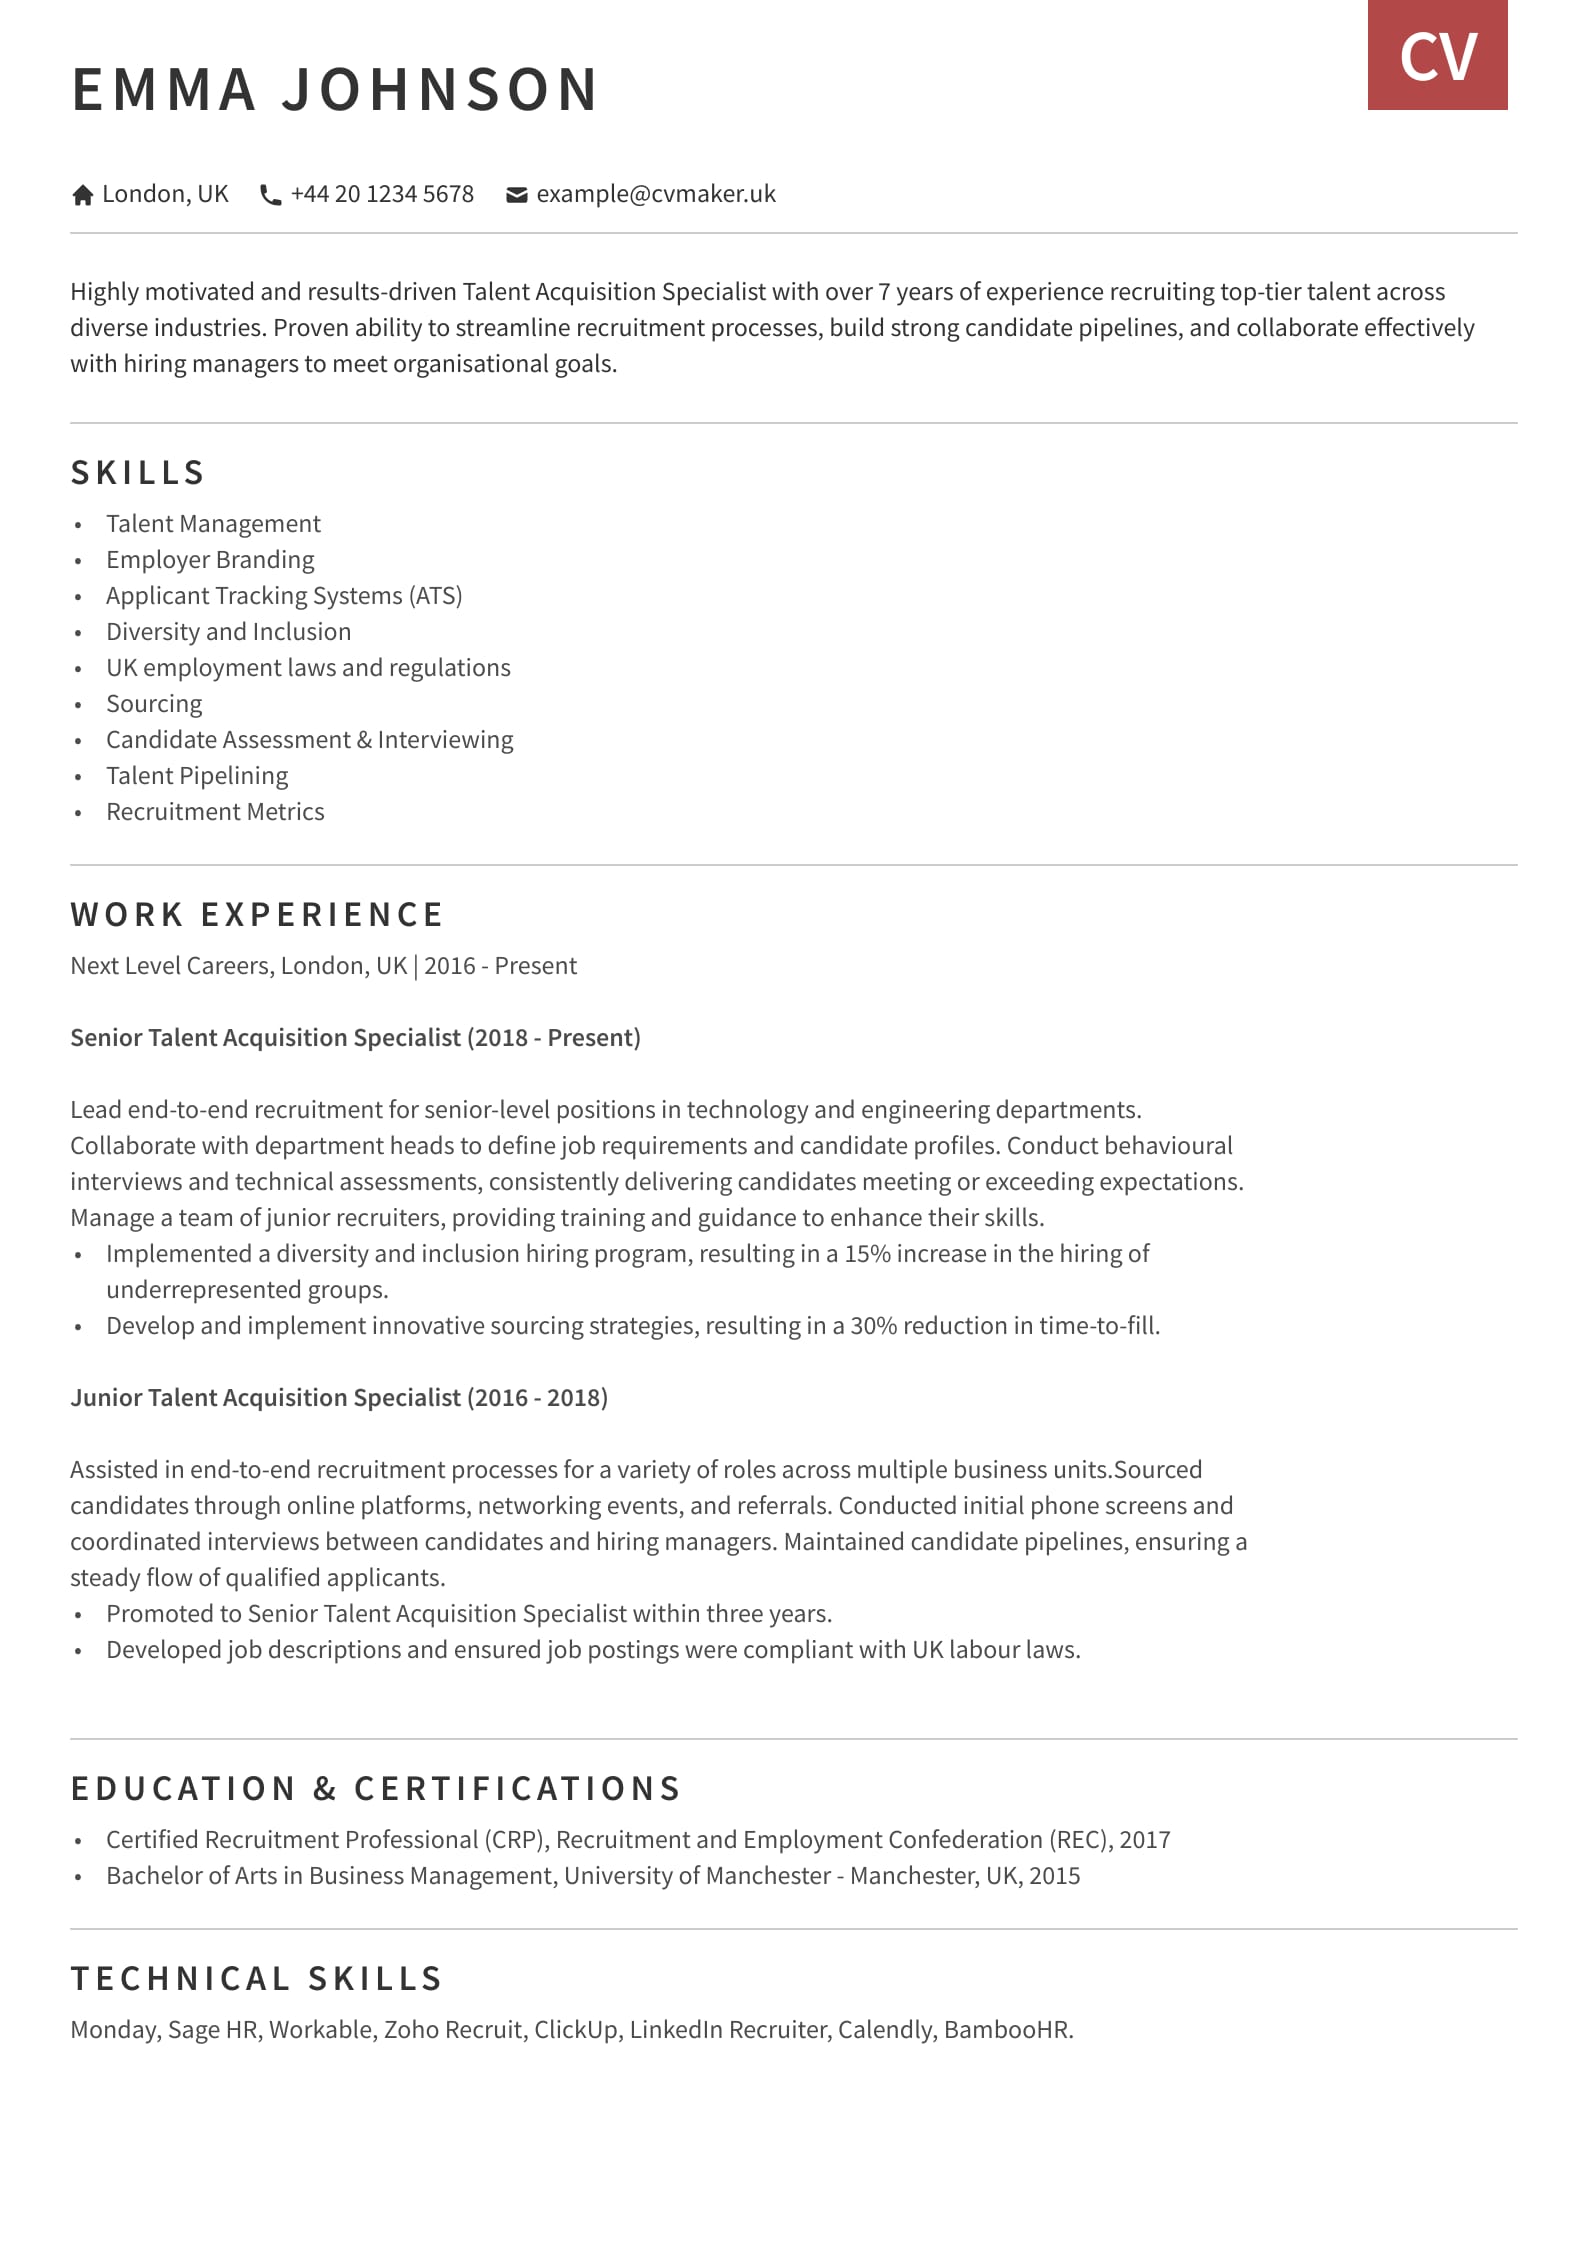 Talent Acquisition CV